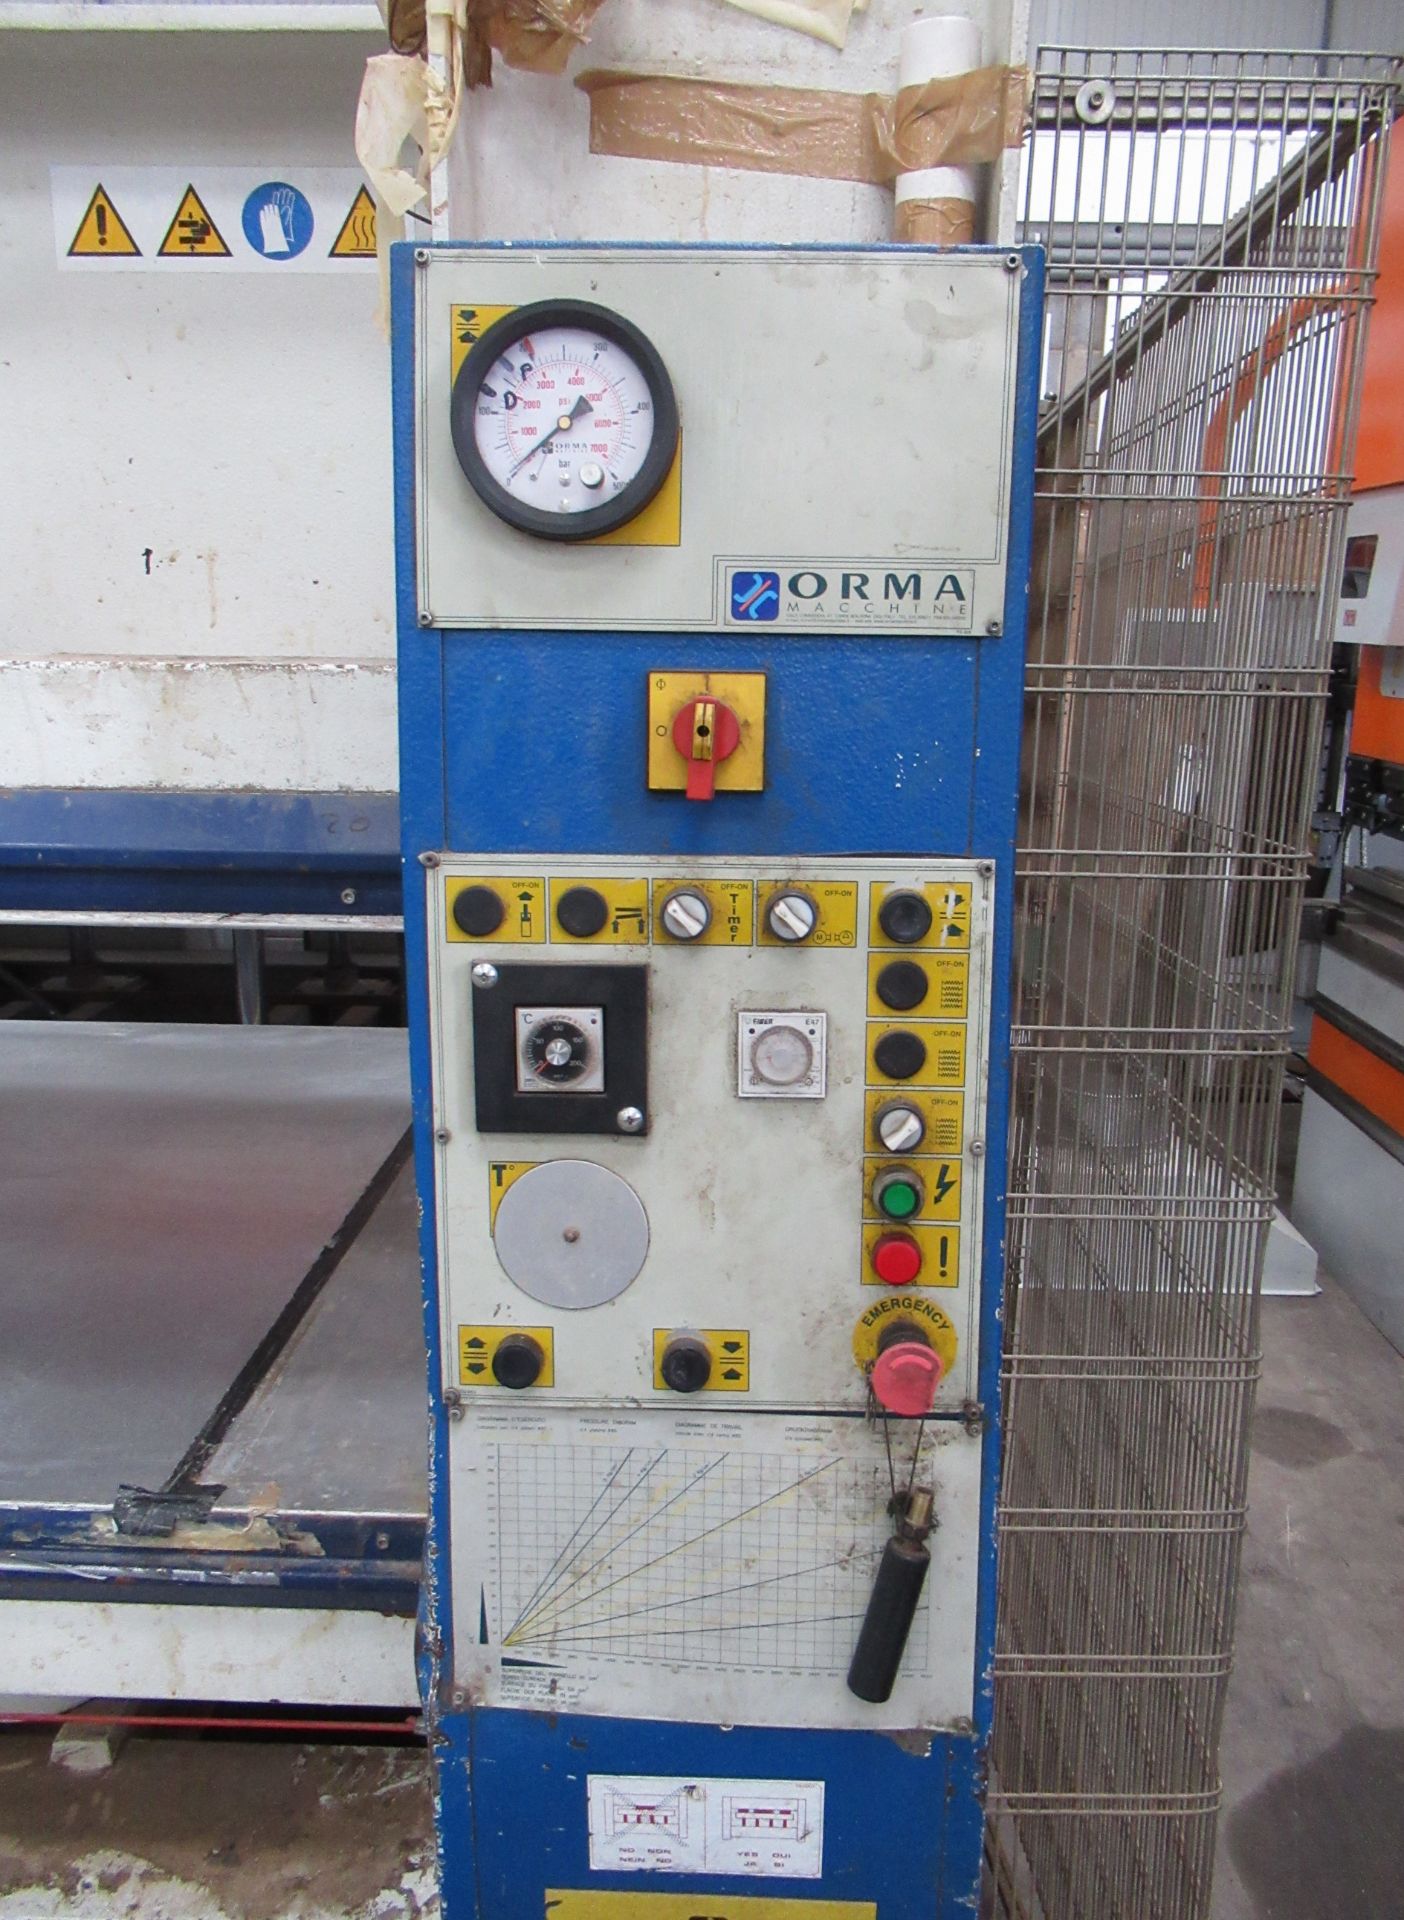 Orma type NPC6/120 veneer press, m/c no. 80270103, YOM 2003, 3 phase, weight- 4.5 tonne - Image 4 of 6